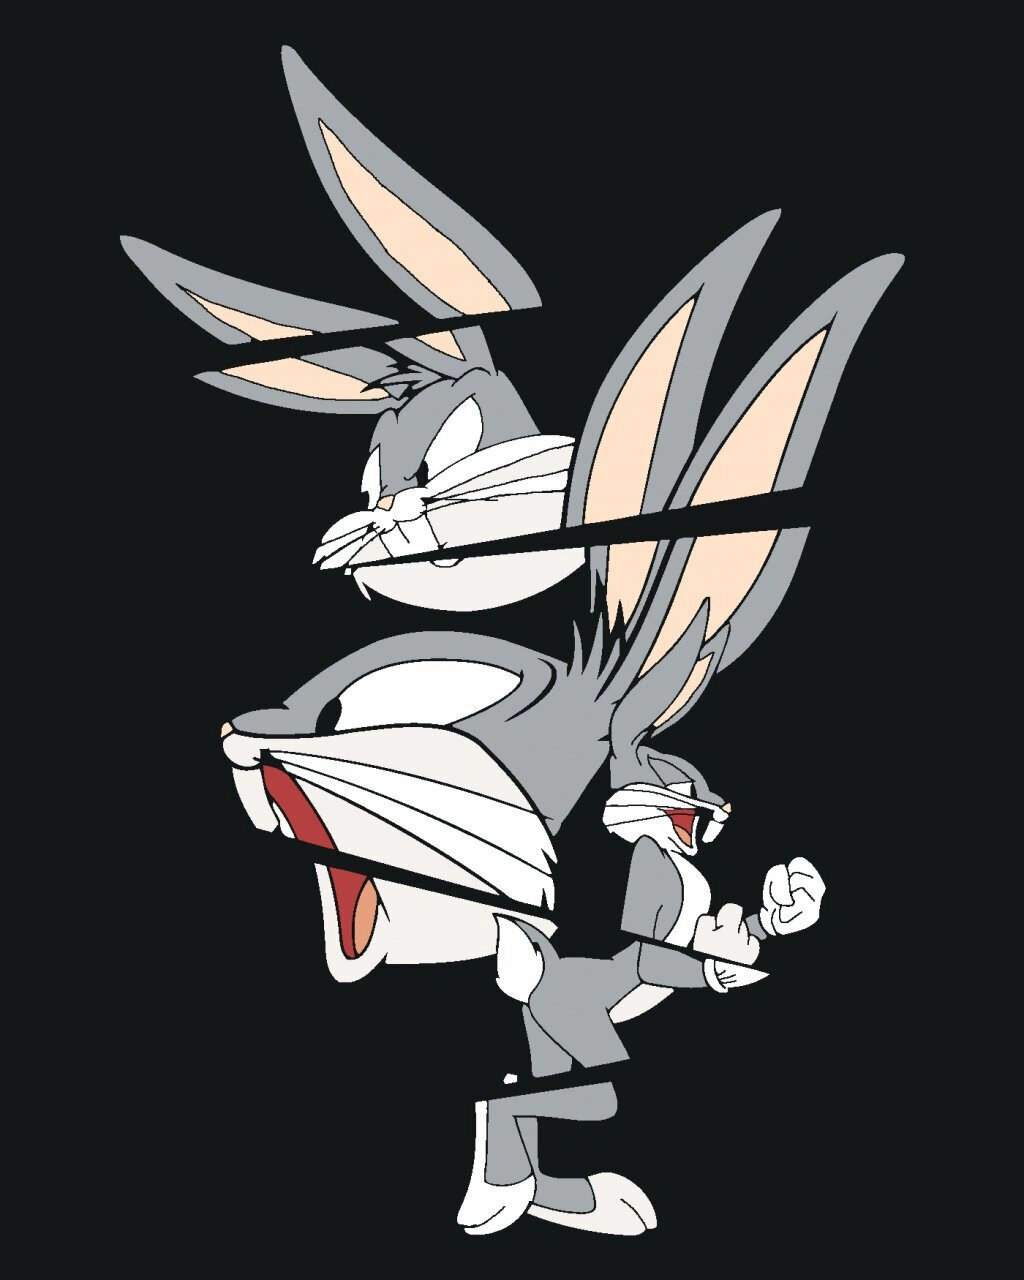 Festés számok szerint Zuty Festés számok szerint Abstract Bugs Bunny (Looney Tunes)